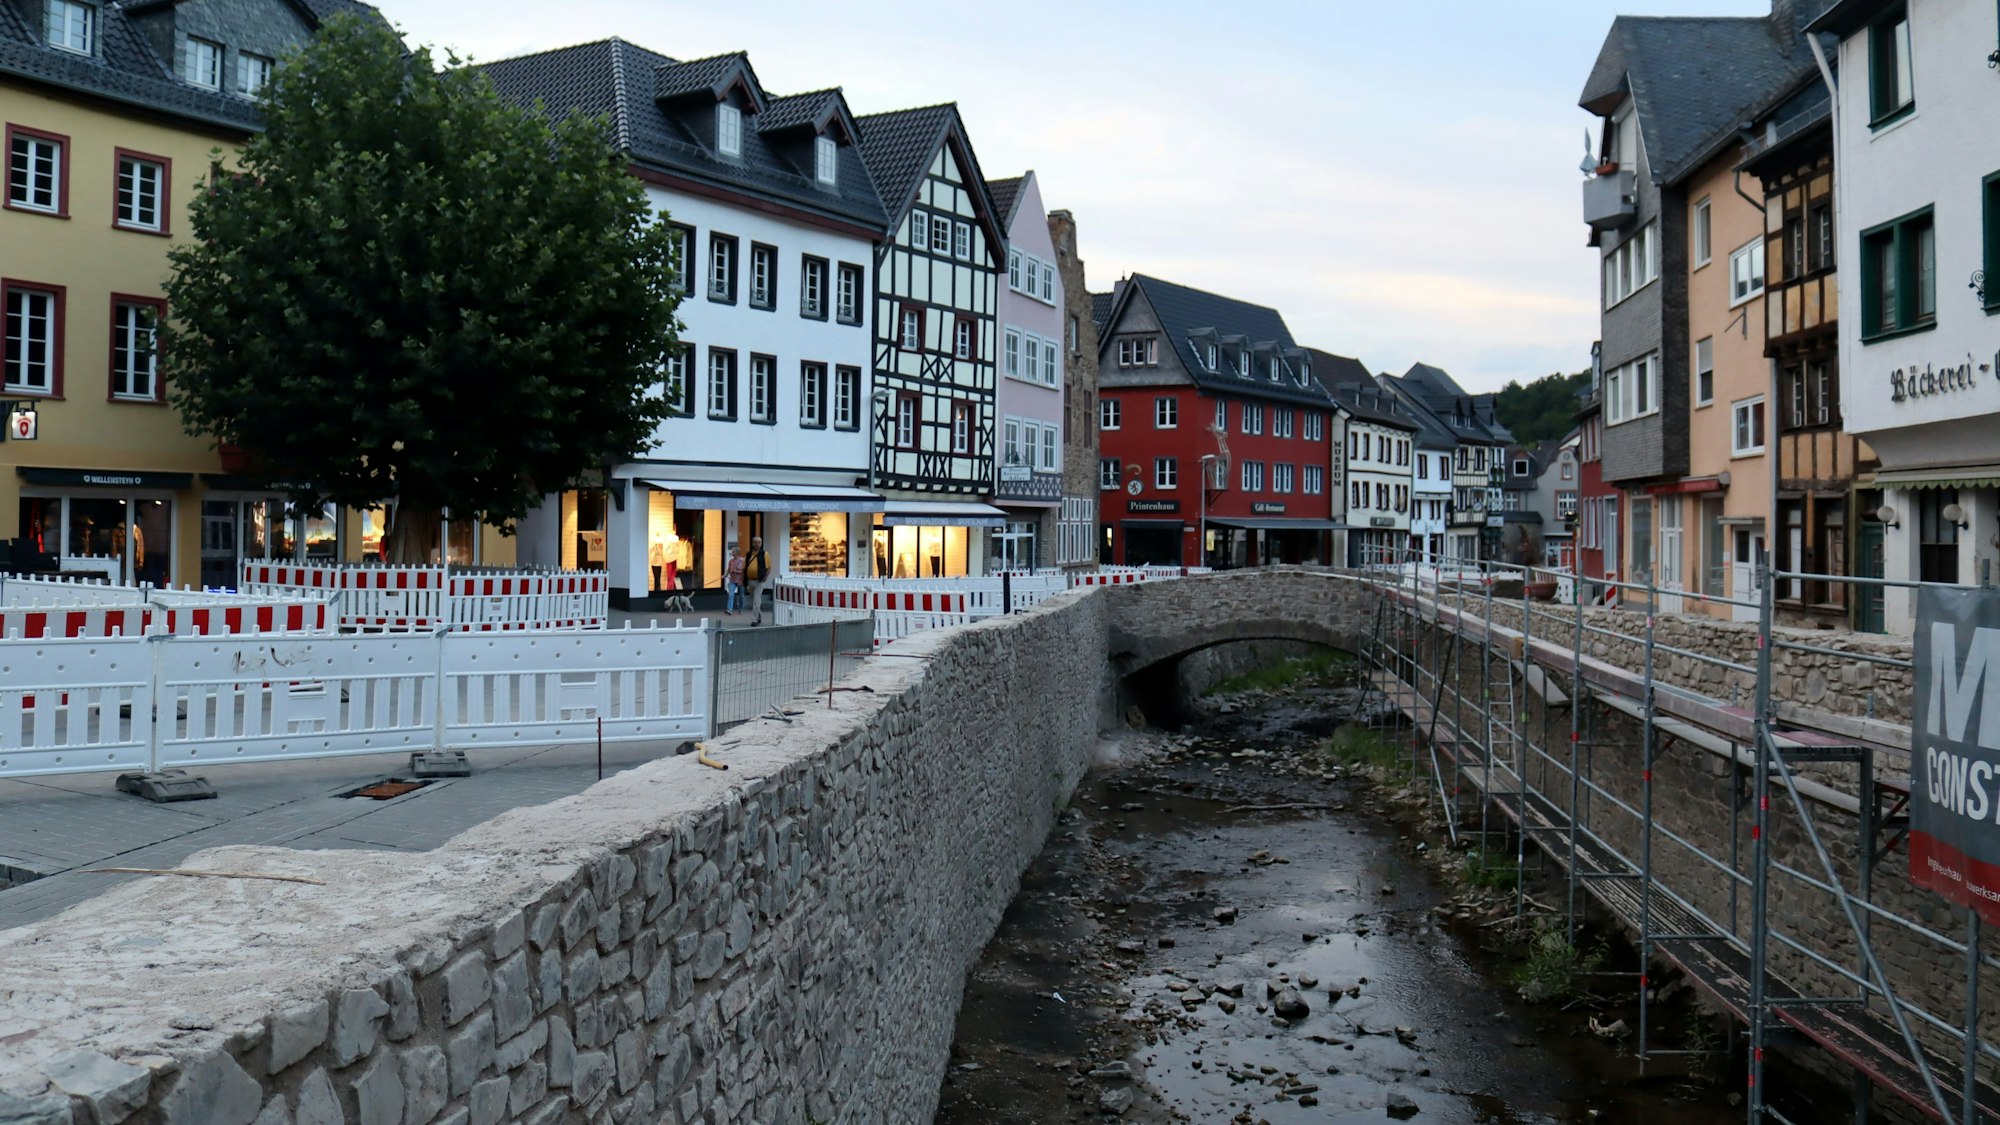 Die Stadt Bad Münstereifel bei einer Aufnahme in den Abendstunden im August 2022. Die Erft ist noch voller Steine, die Mauern noch nicht komplett wiederhergestellt, der Markt ist abgesperrt wegen Wiederaufbauarbeiten.